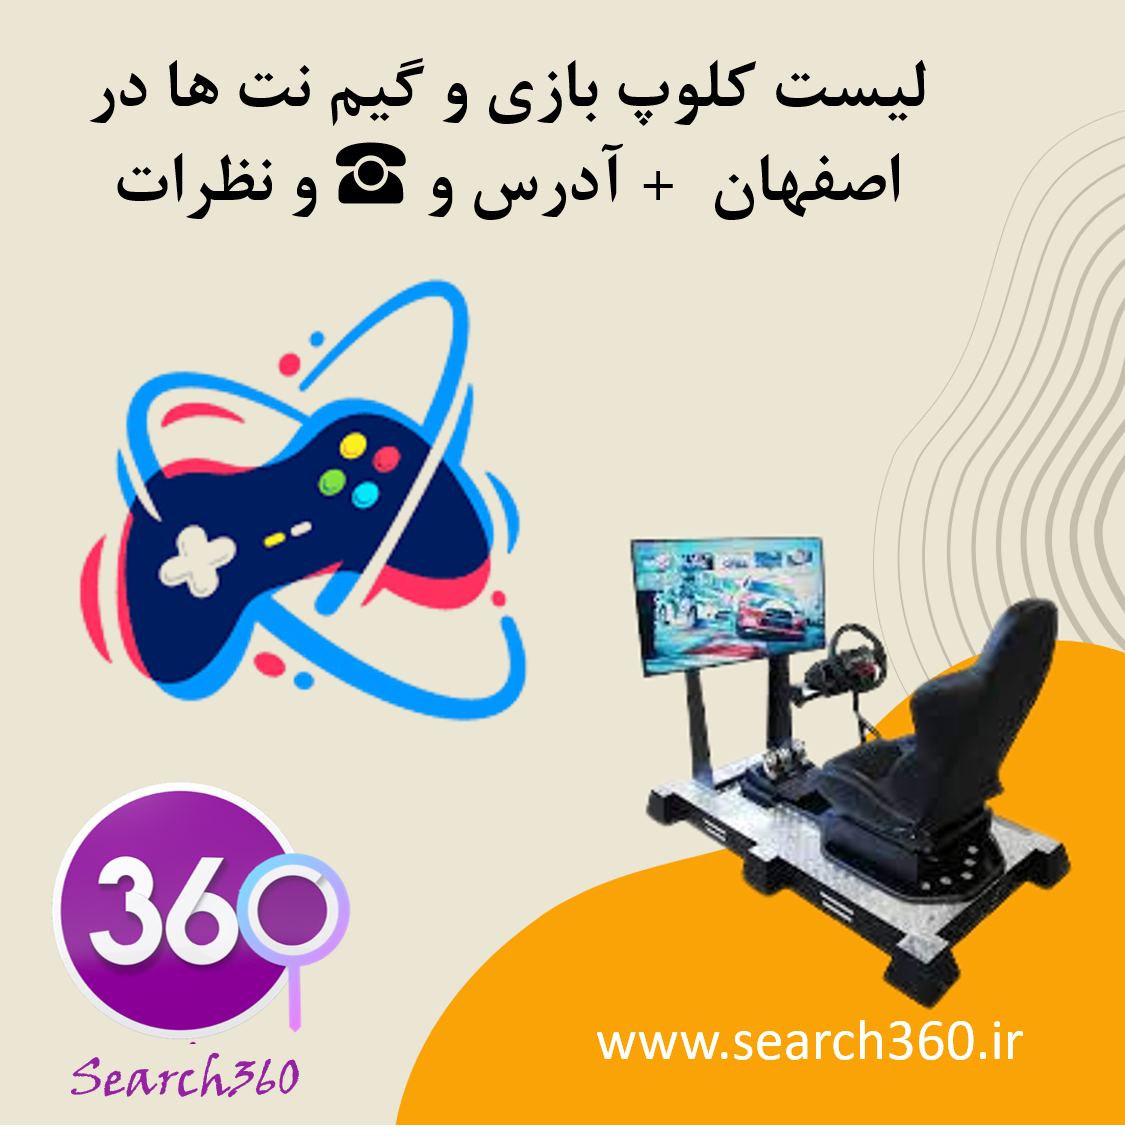 لیست کلاب و گیم نت های بازی در اصفهان با آدرس و تلفن ☎️